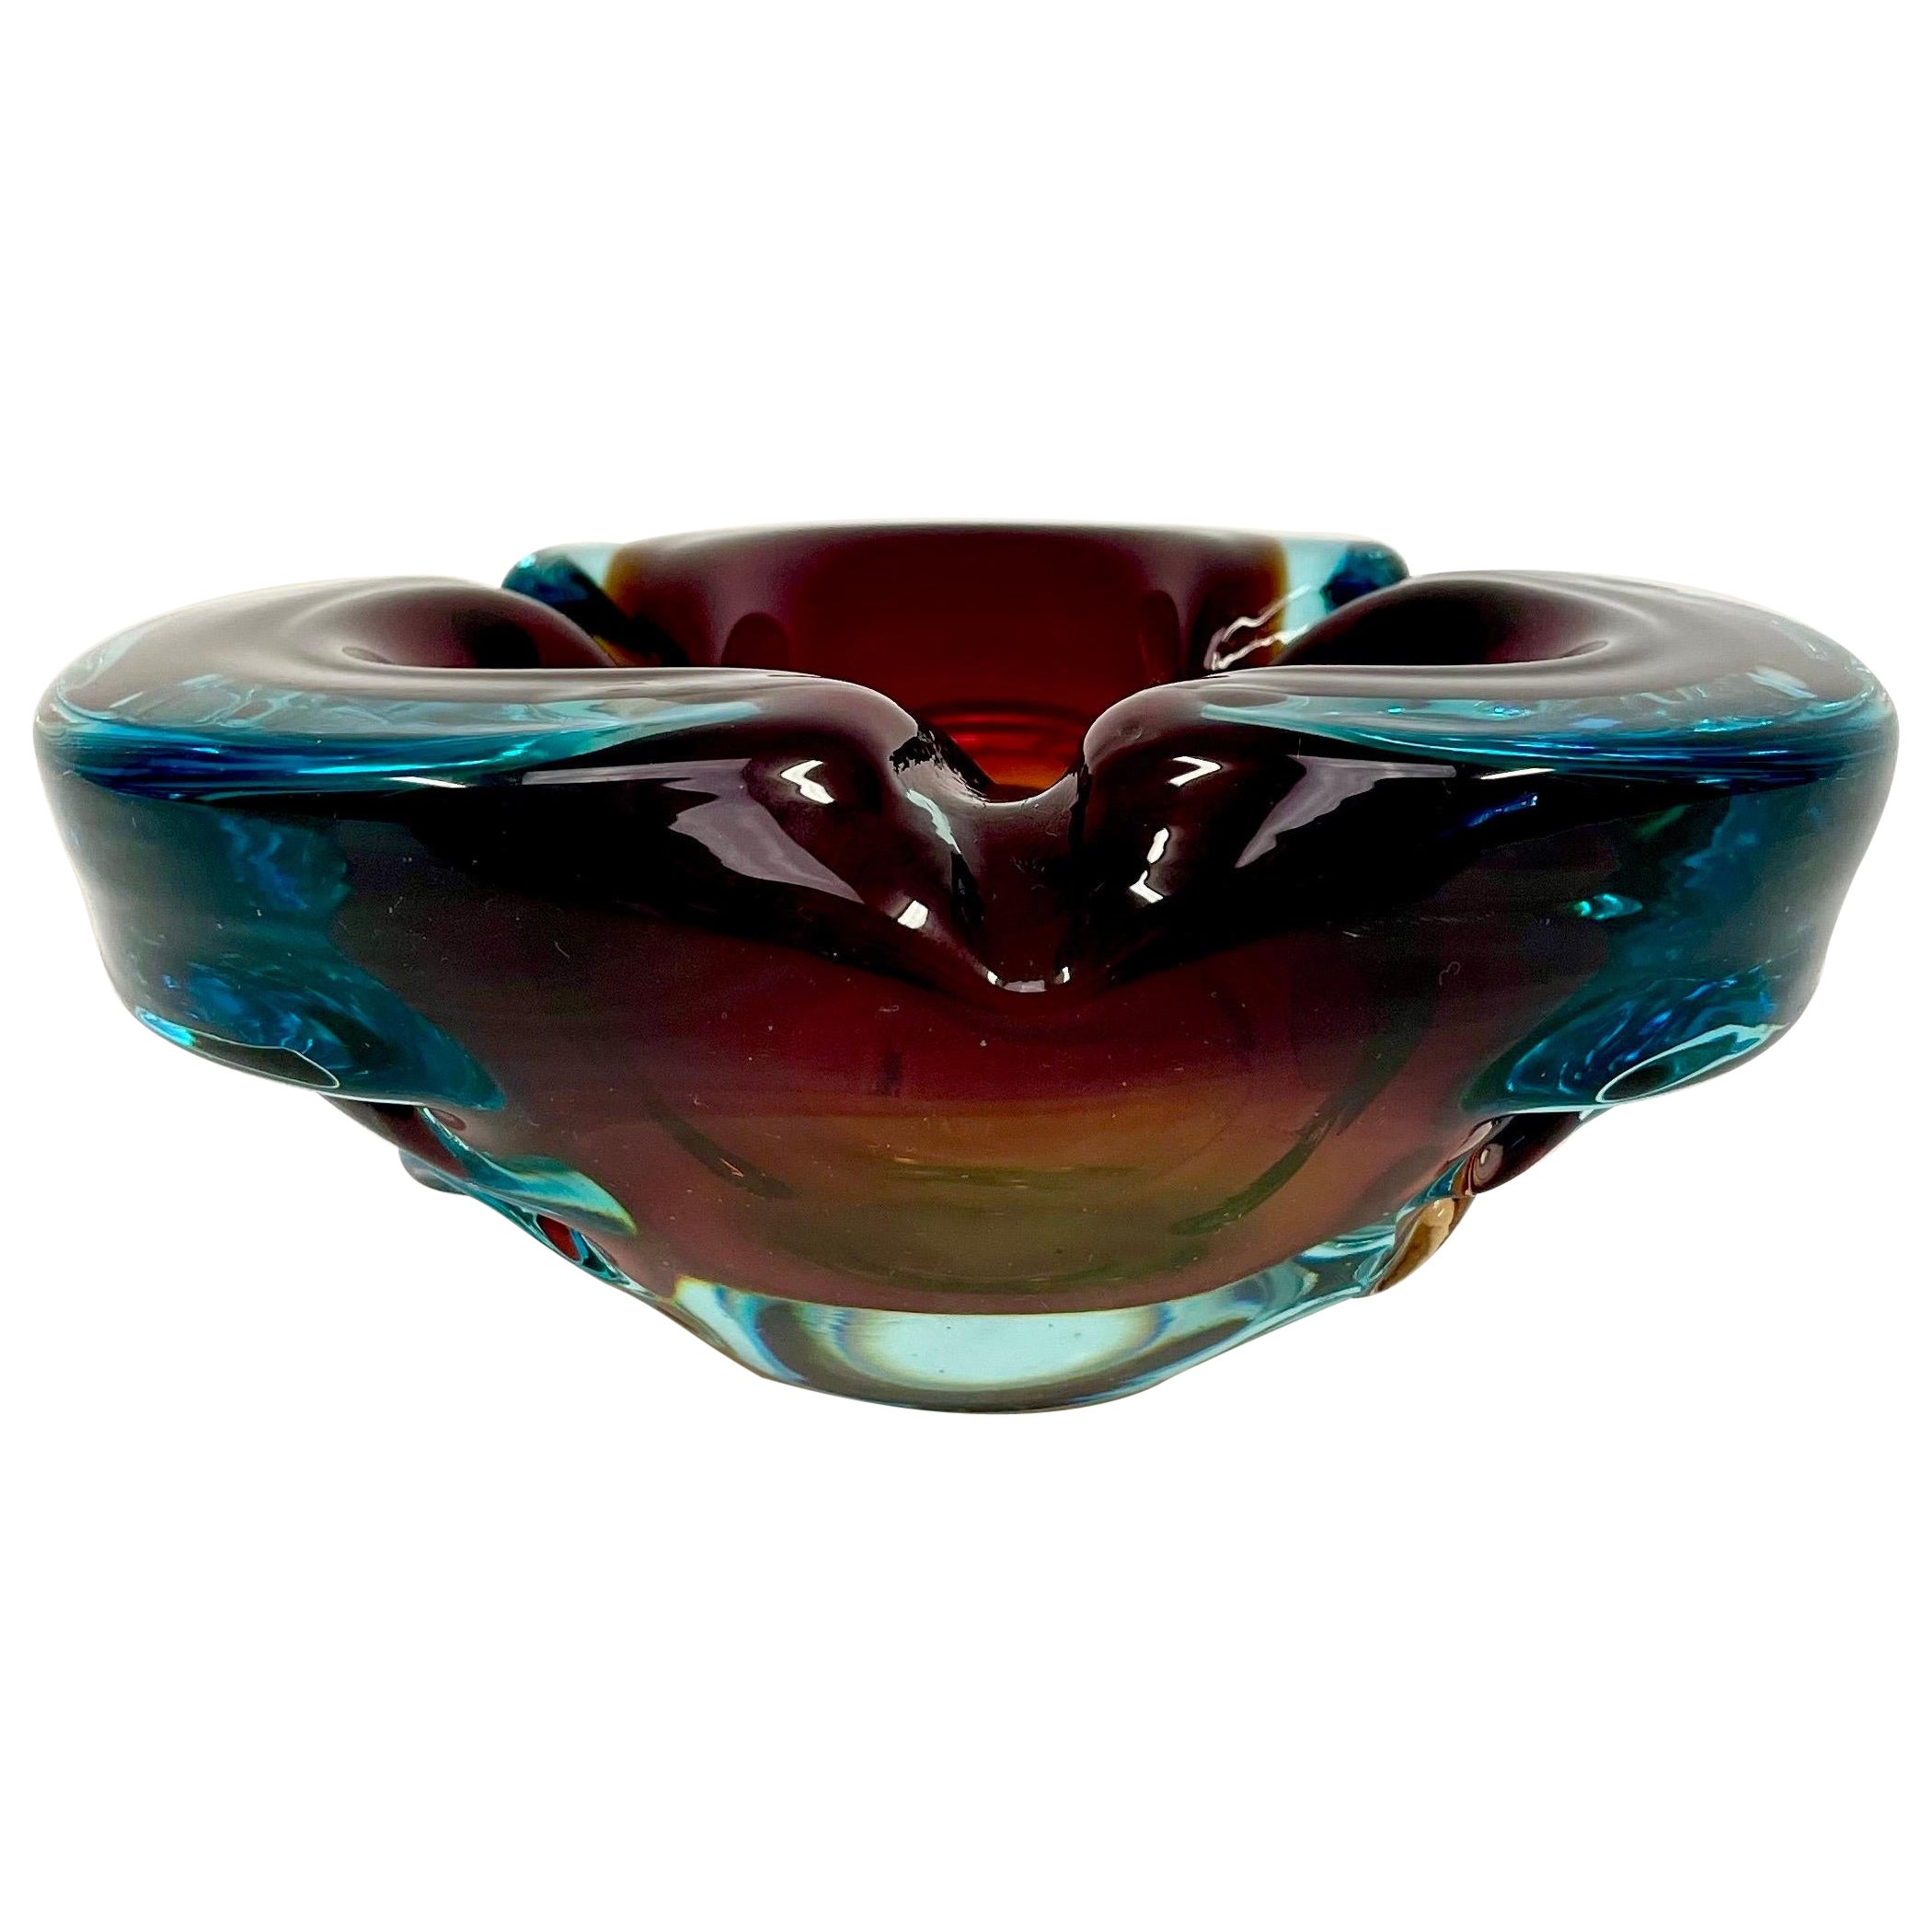 Italian Soft Shaped Tricolor Art Glass Ashtray by Alfredo Barbini for Murano